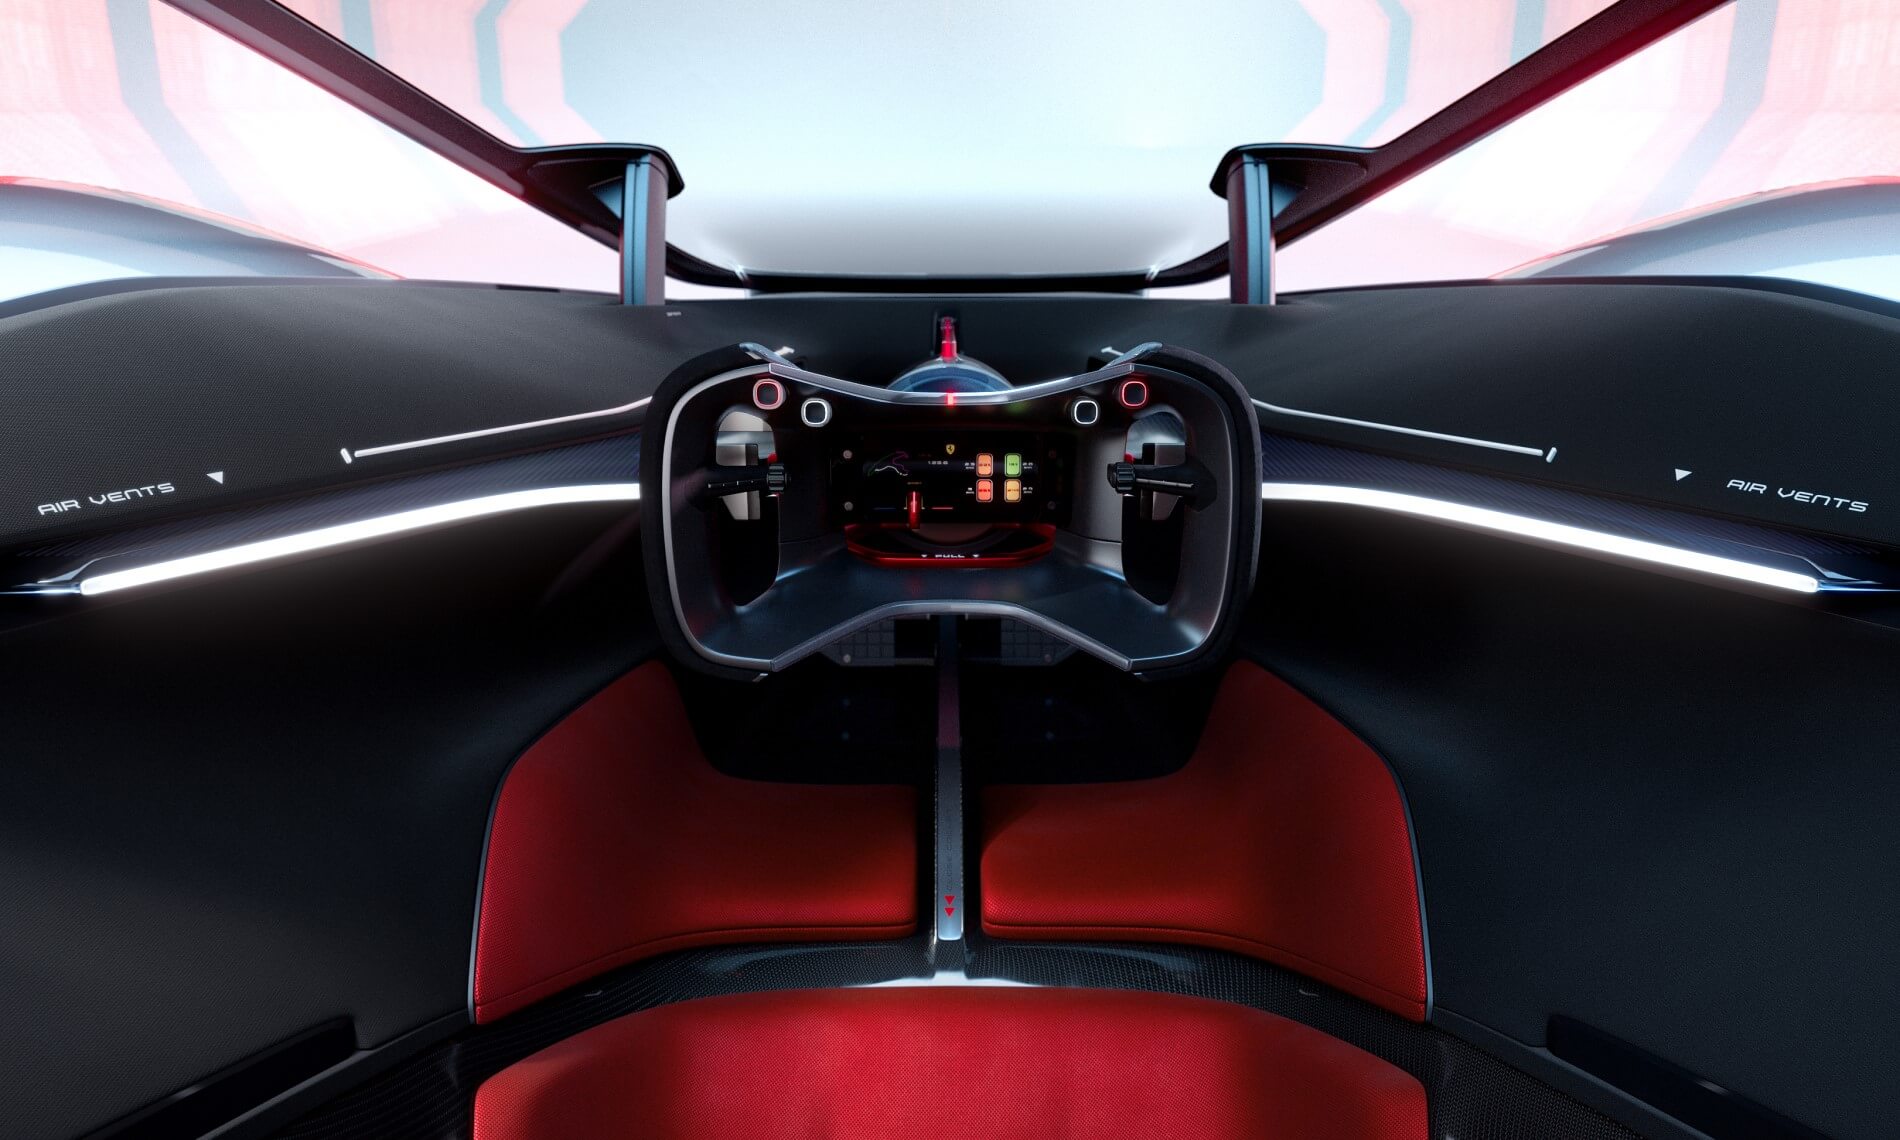 Ferrari Vision Gran Turismo cabin